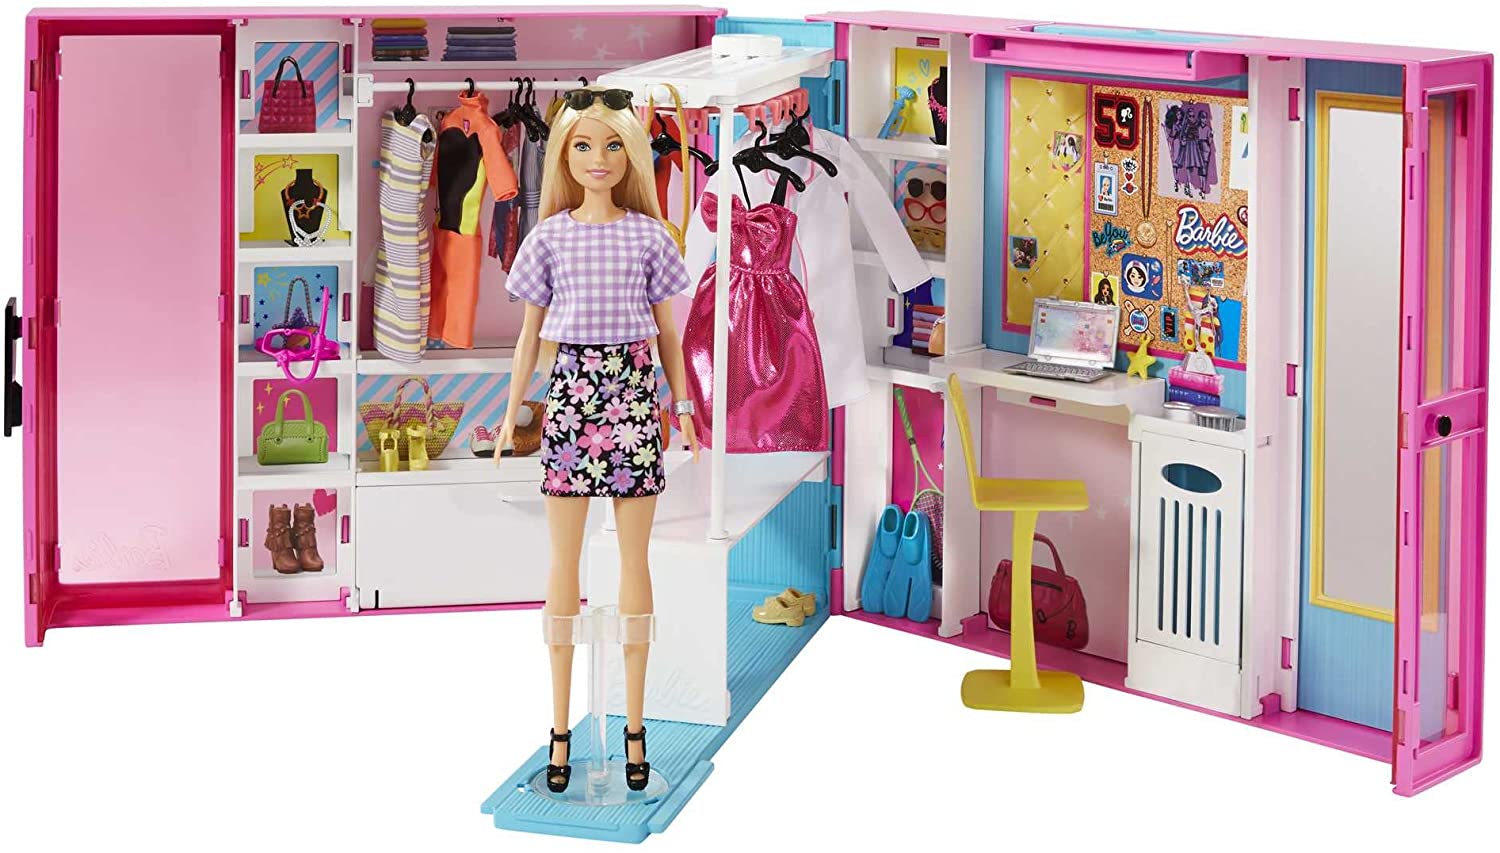 Conjunto Closet Armário De Luxo Da Boneca Menina Loira Barbie